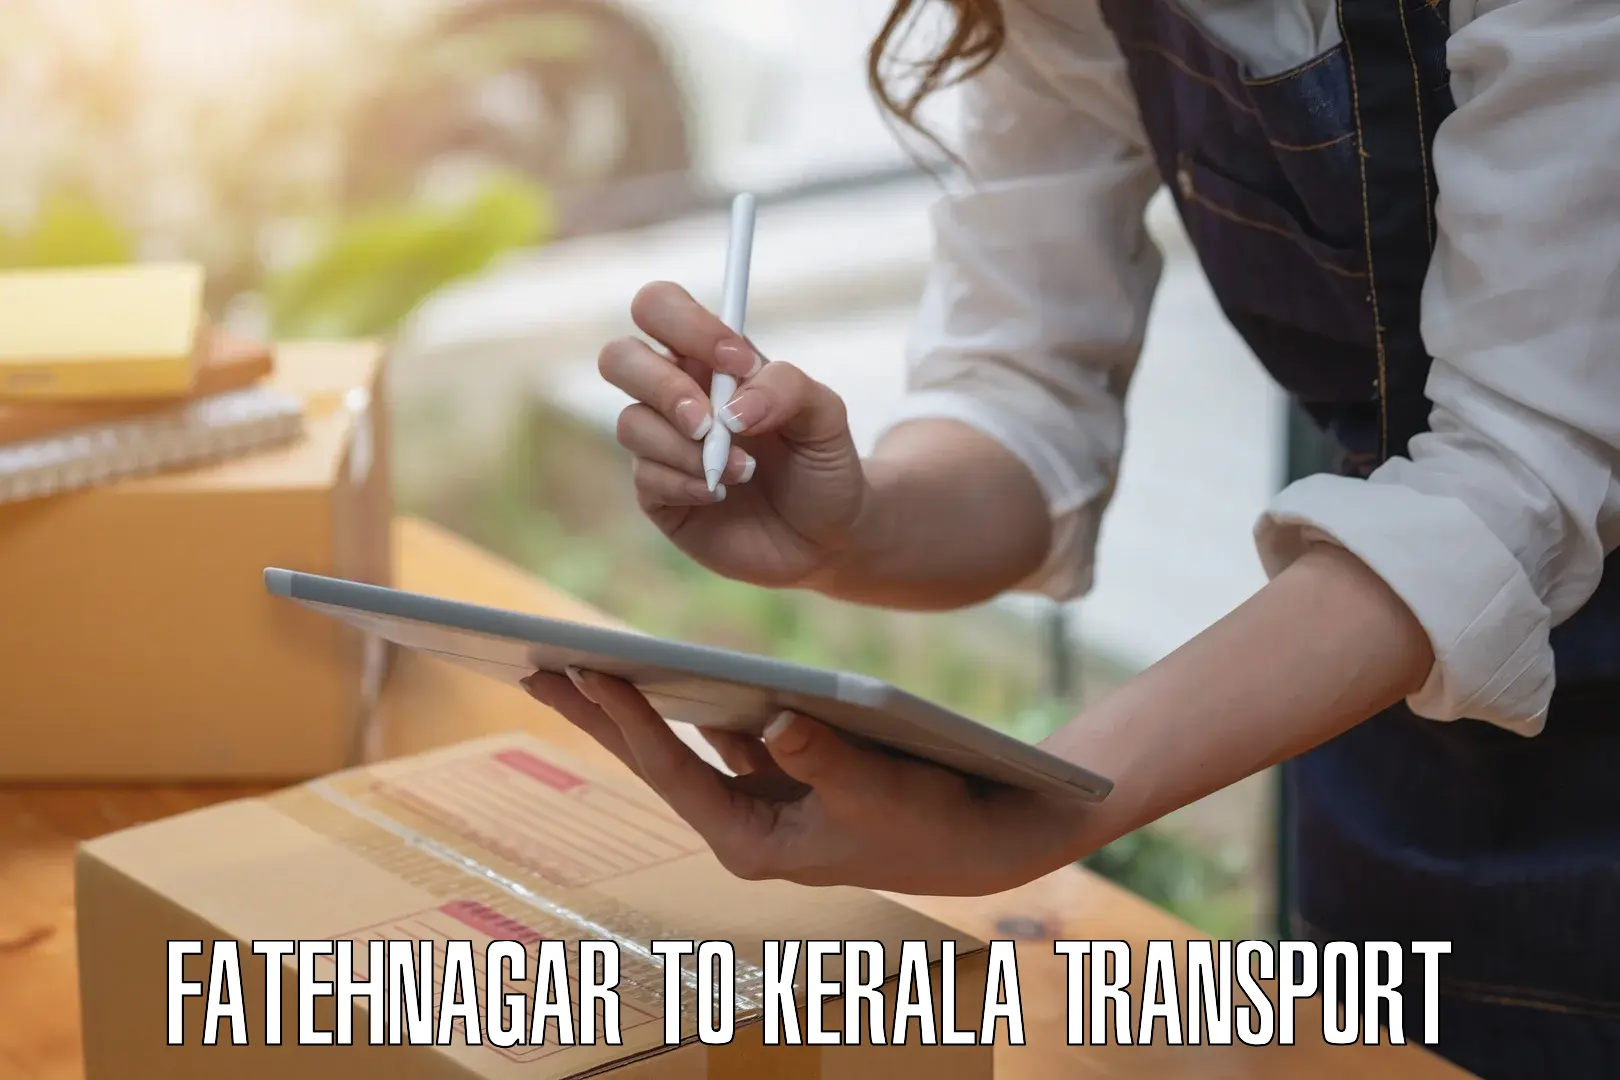 Transport shared services Fatehnagar to Manthuka